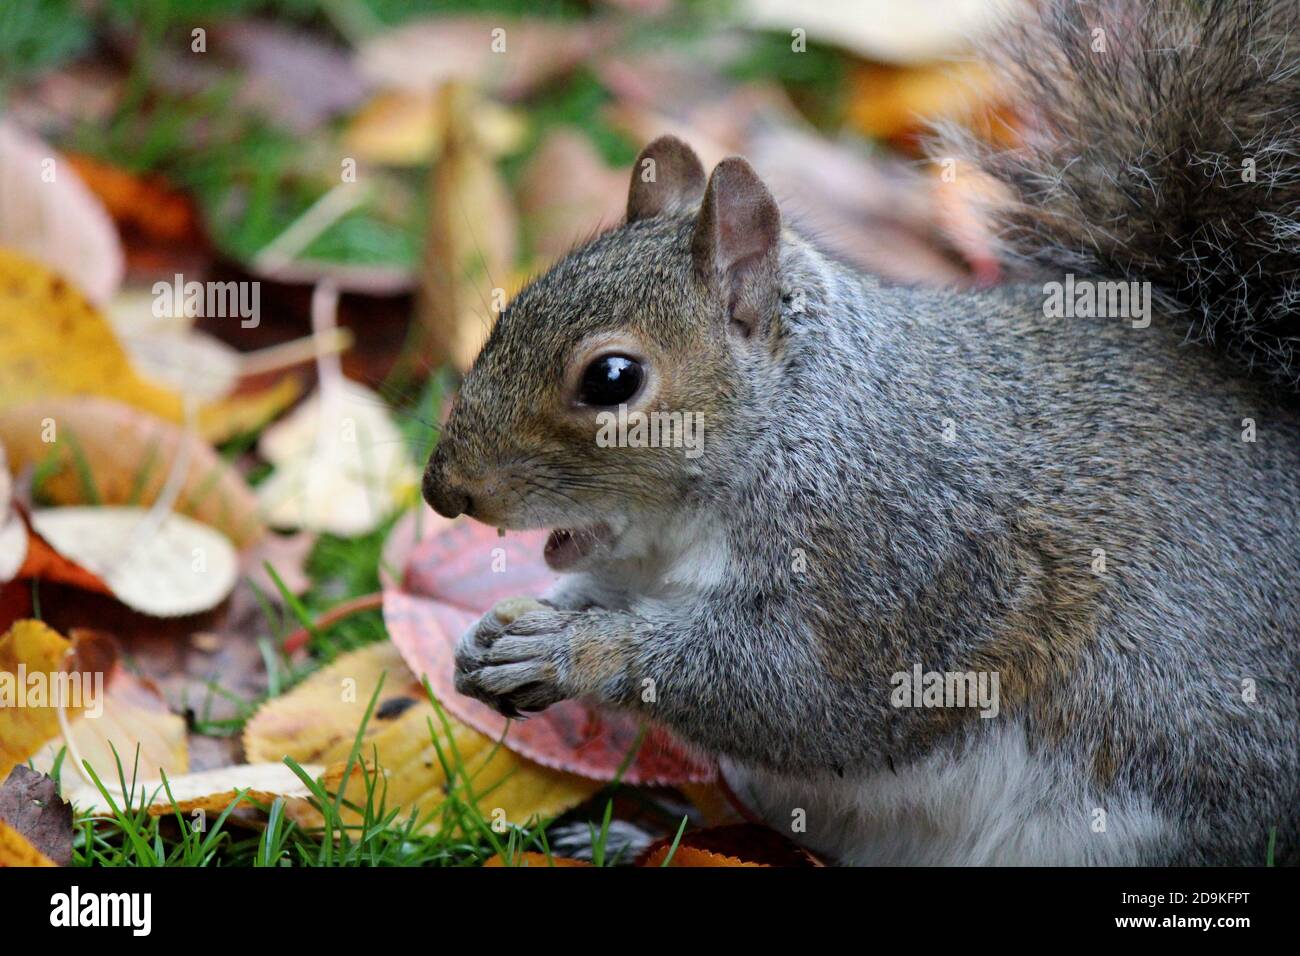 L'écureuil mignon mange des noix dans la forêt d'automne. Arrière-plan de feuilles colorées. Photographie de la nature d'automne. Couleurs de l'automne. Banque D'Images